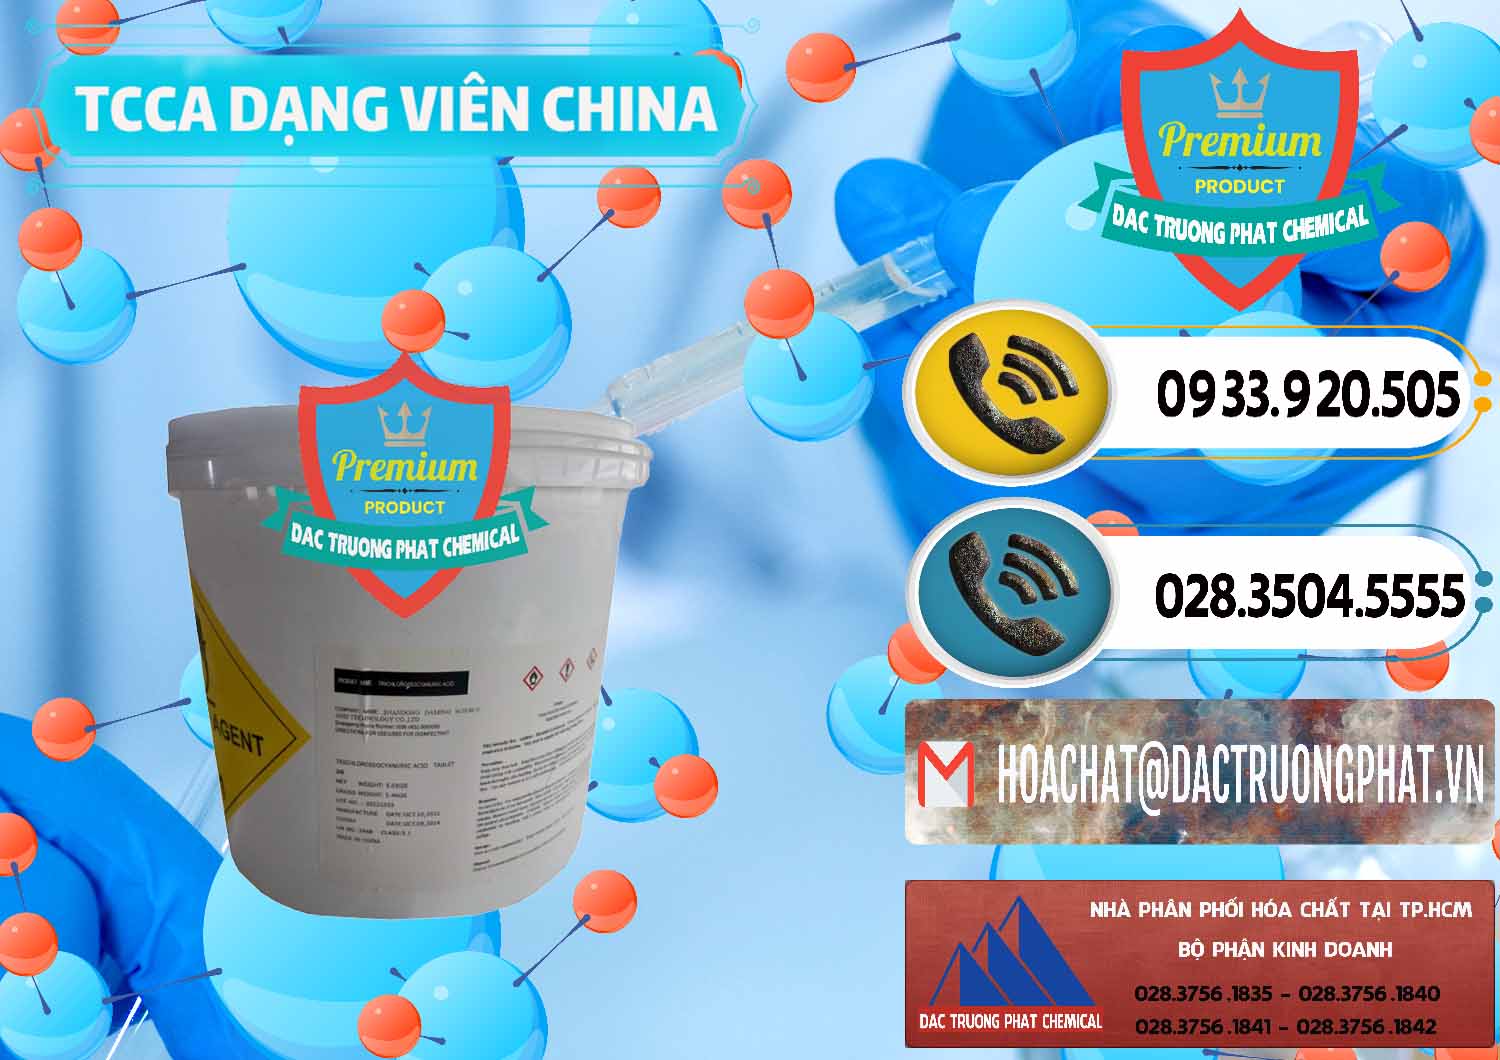 Nơi bán & cung cấp TCCA - Acid Trichloroisocyanuric Dạng Viên Thùng 5kg Trung Quốc China - 0379 - Đơn vị chuyên cung cấp và kinh doanh hóa chất tại TP.HCM - hoachatdetnhuom.vn